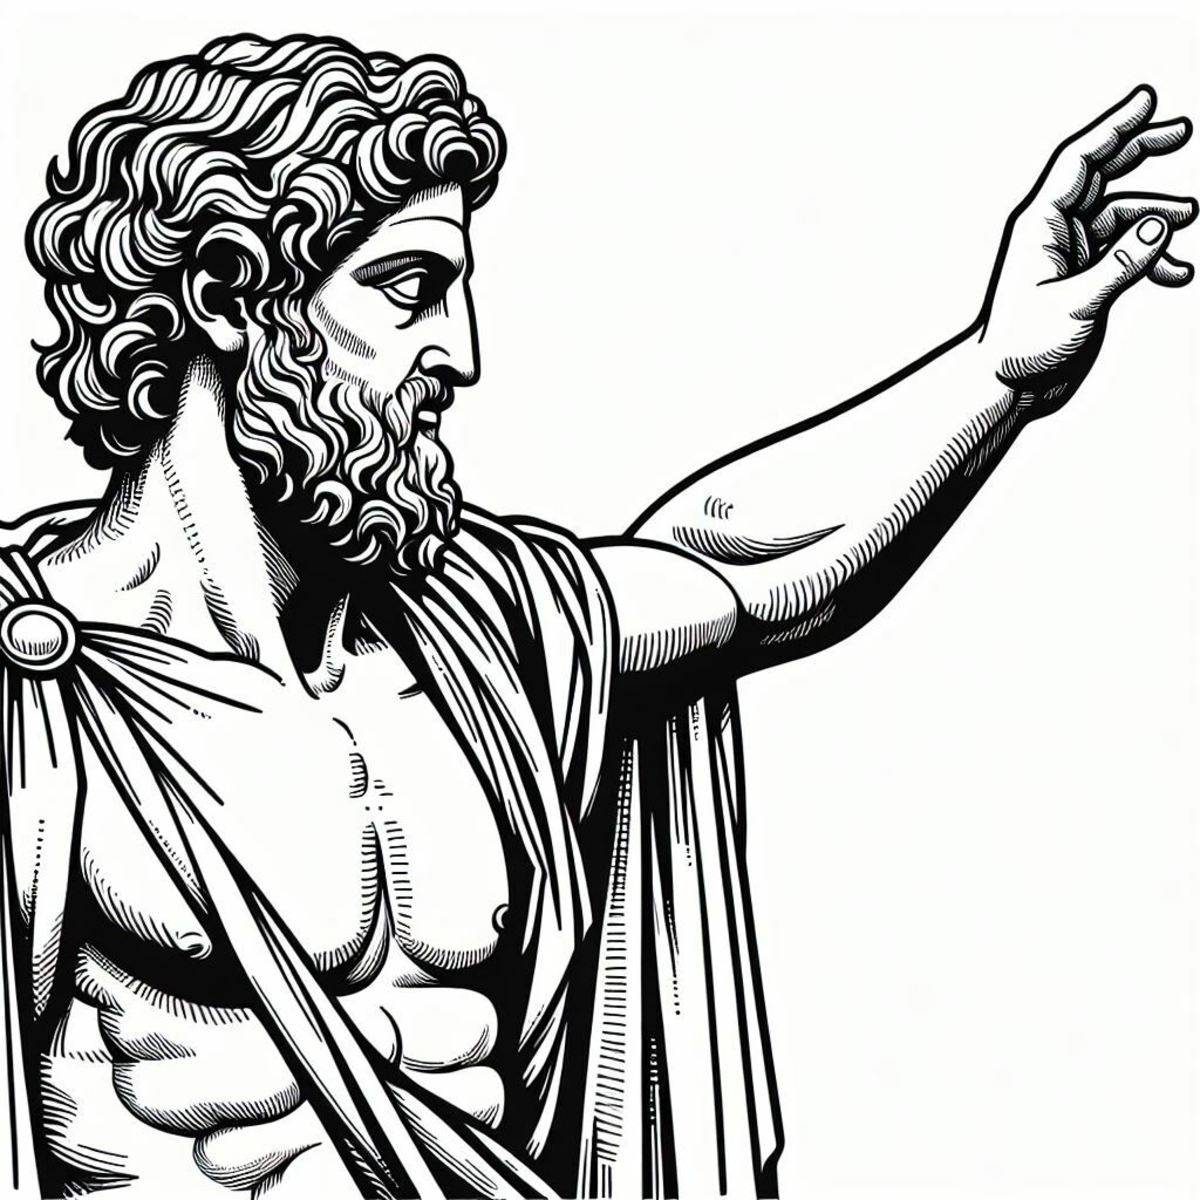 Who was Alcibiades?